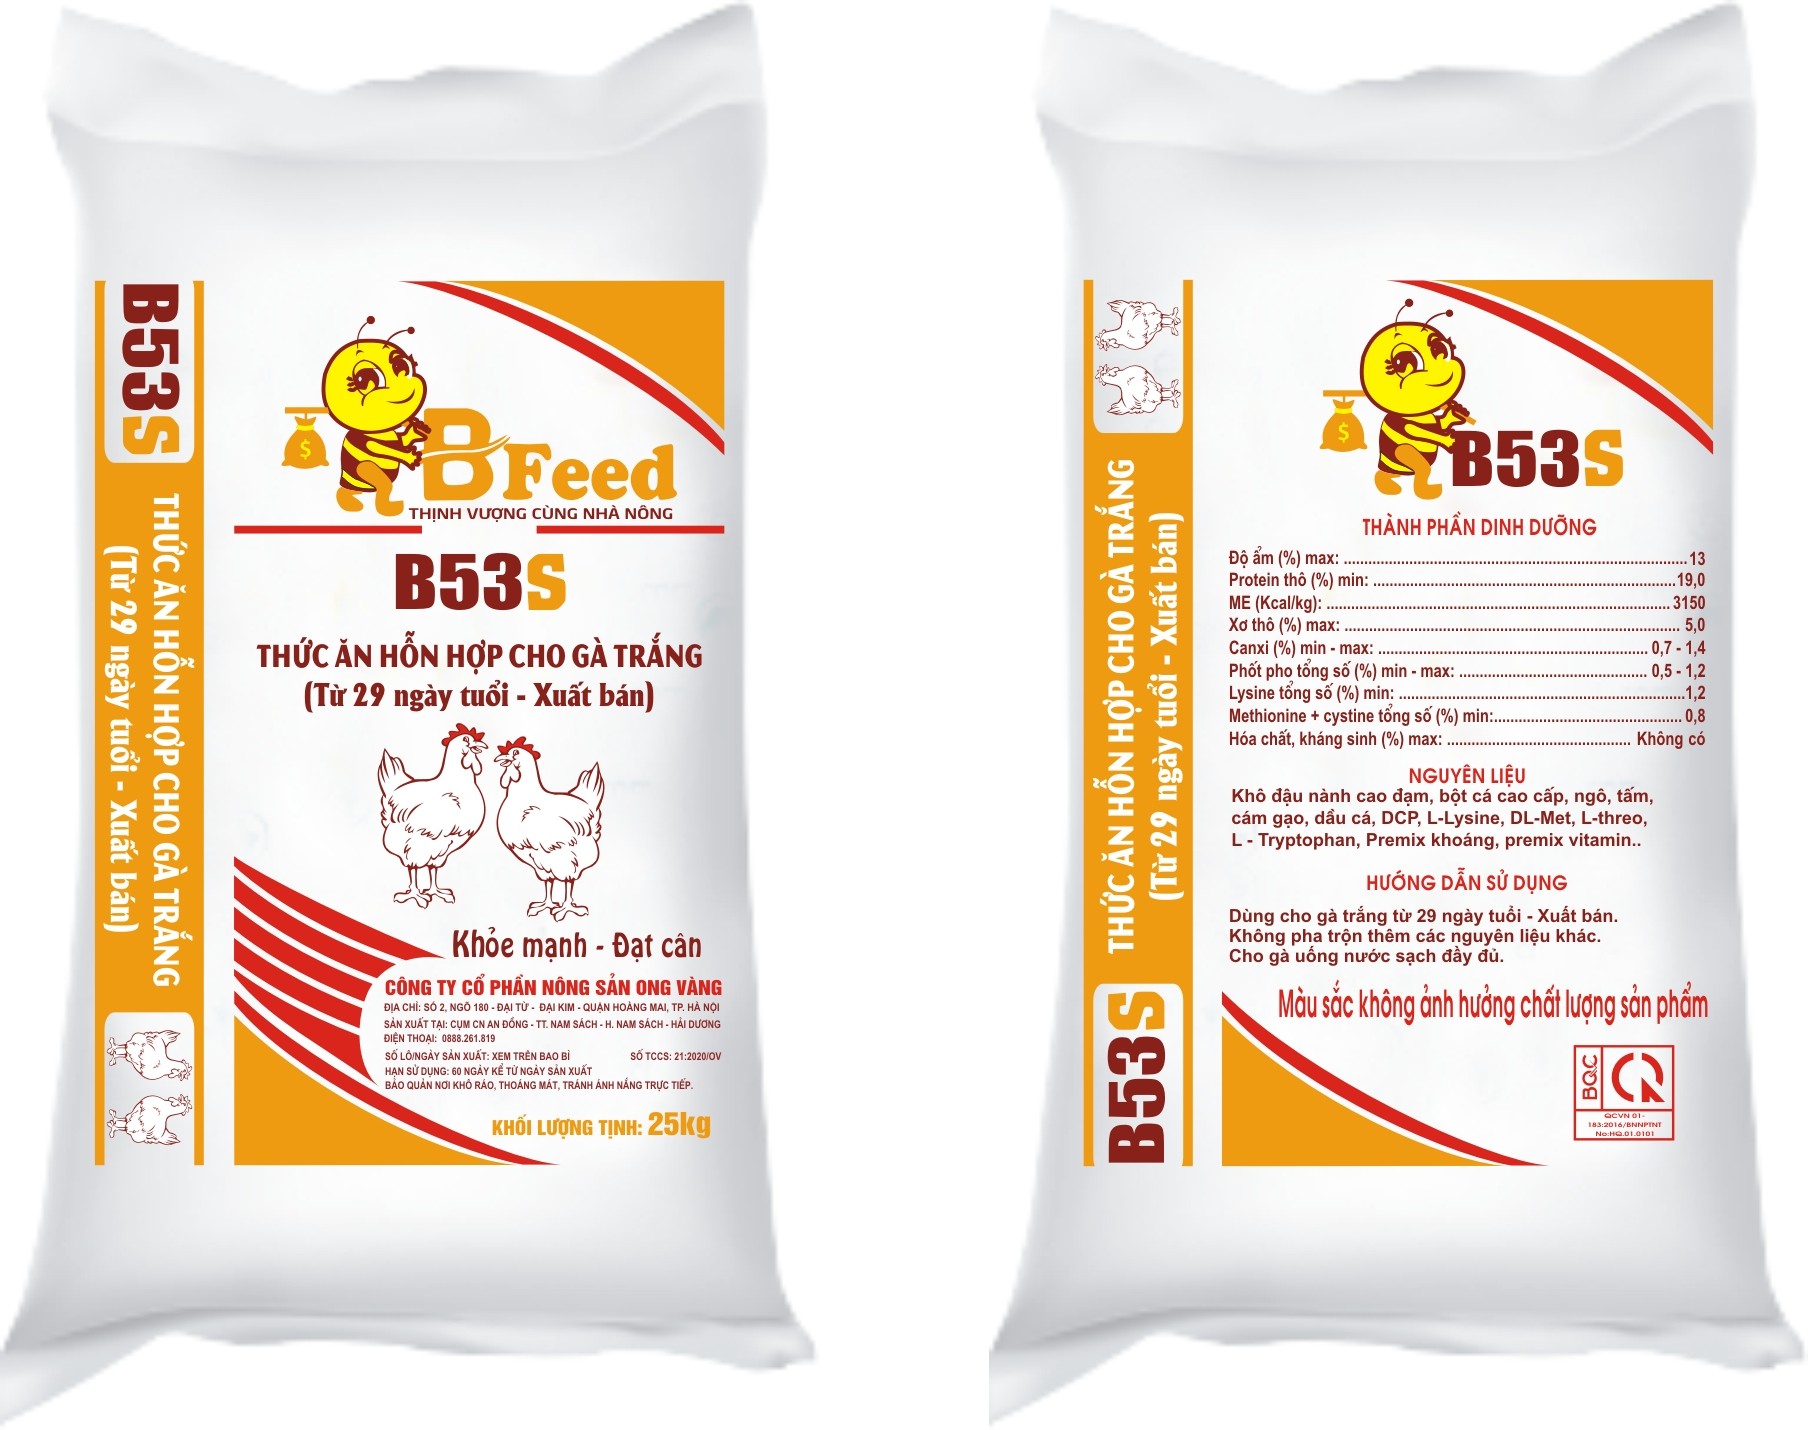 B53S - Thức ăn hỗn hợp cho gà trắng (Từ 29 ngày tuổi - xuất bán)